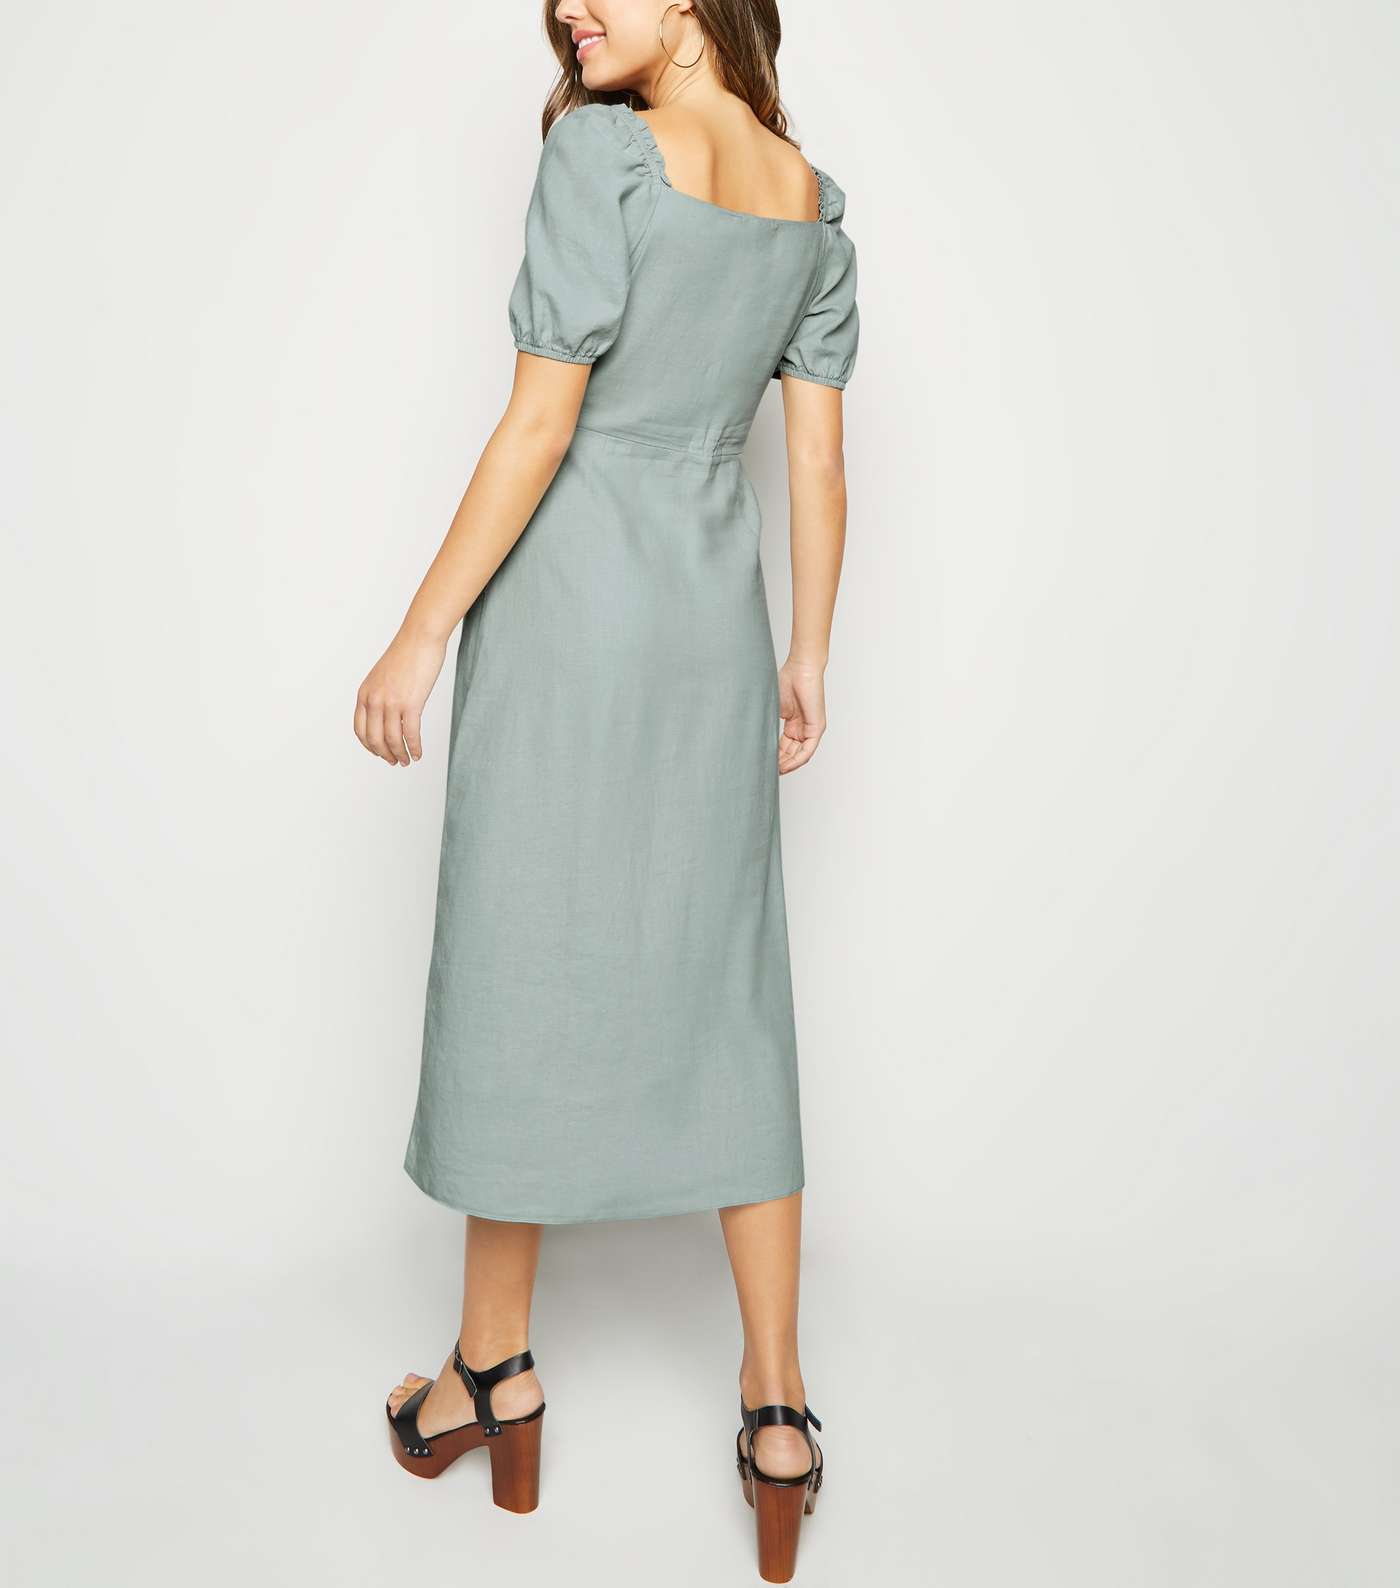 Mint Green Linen Blend Button Up Milkmaid Dress Image 3